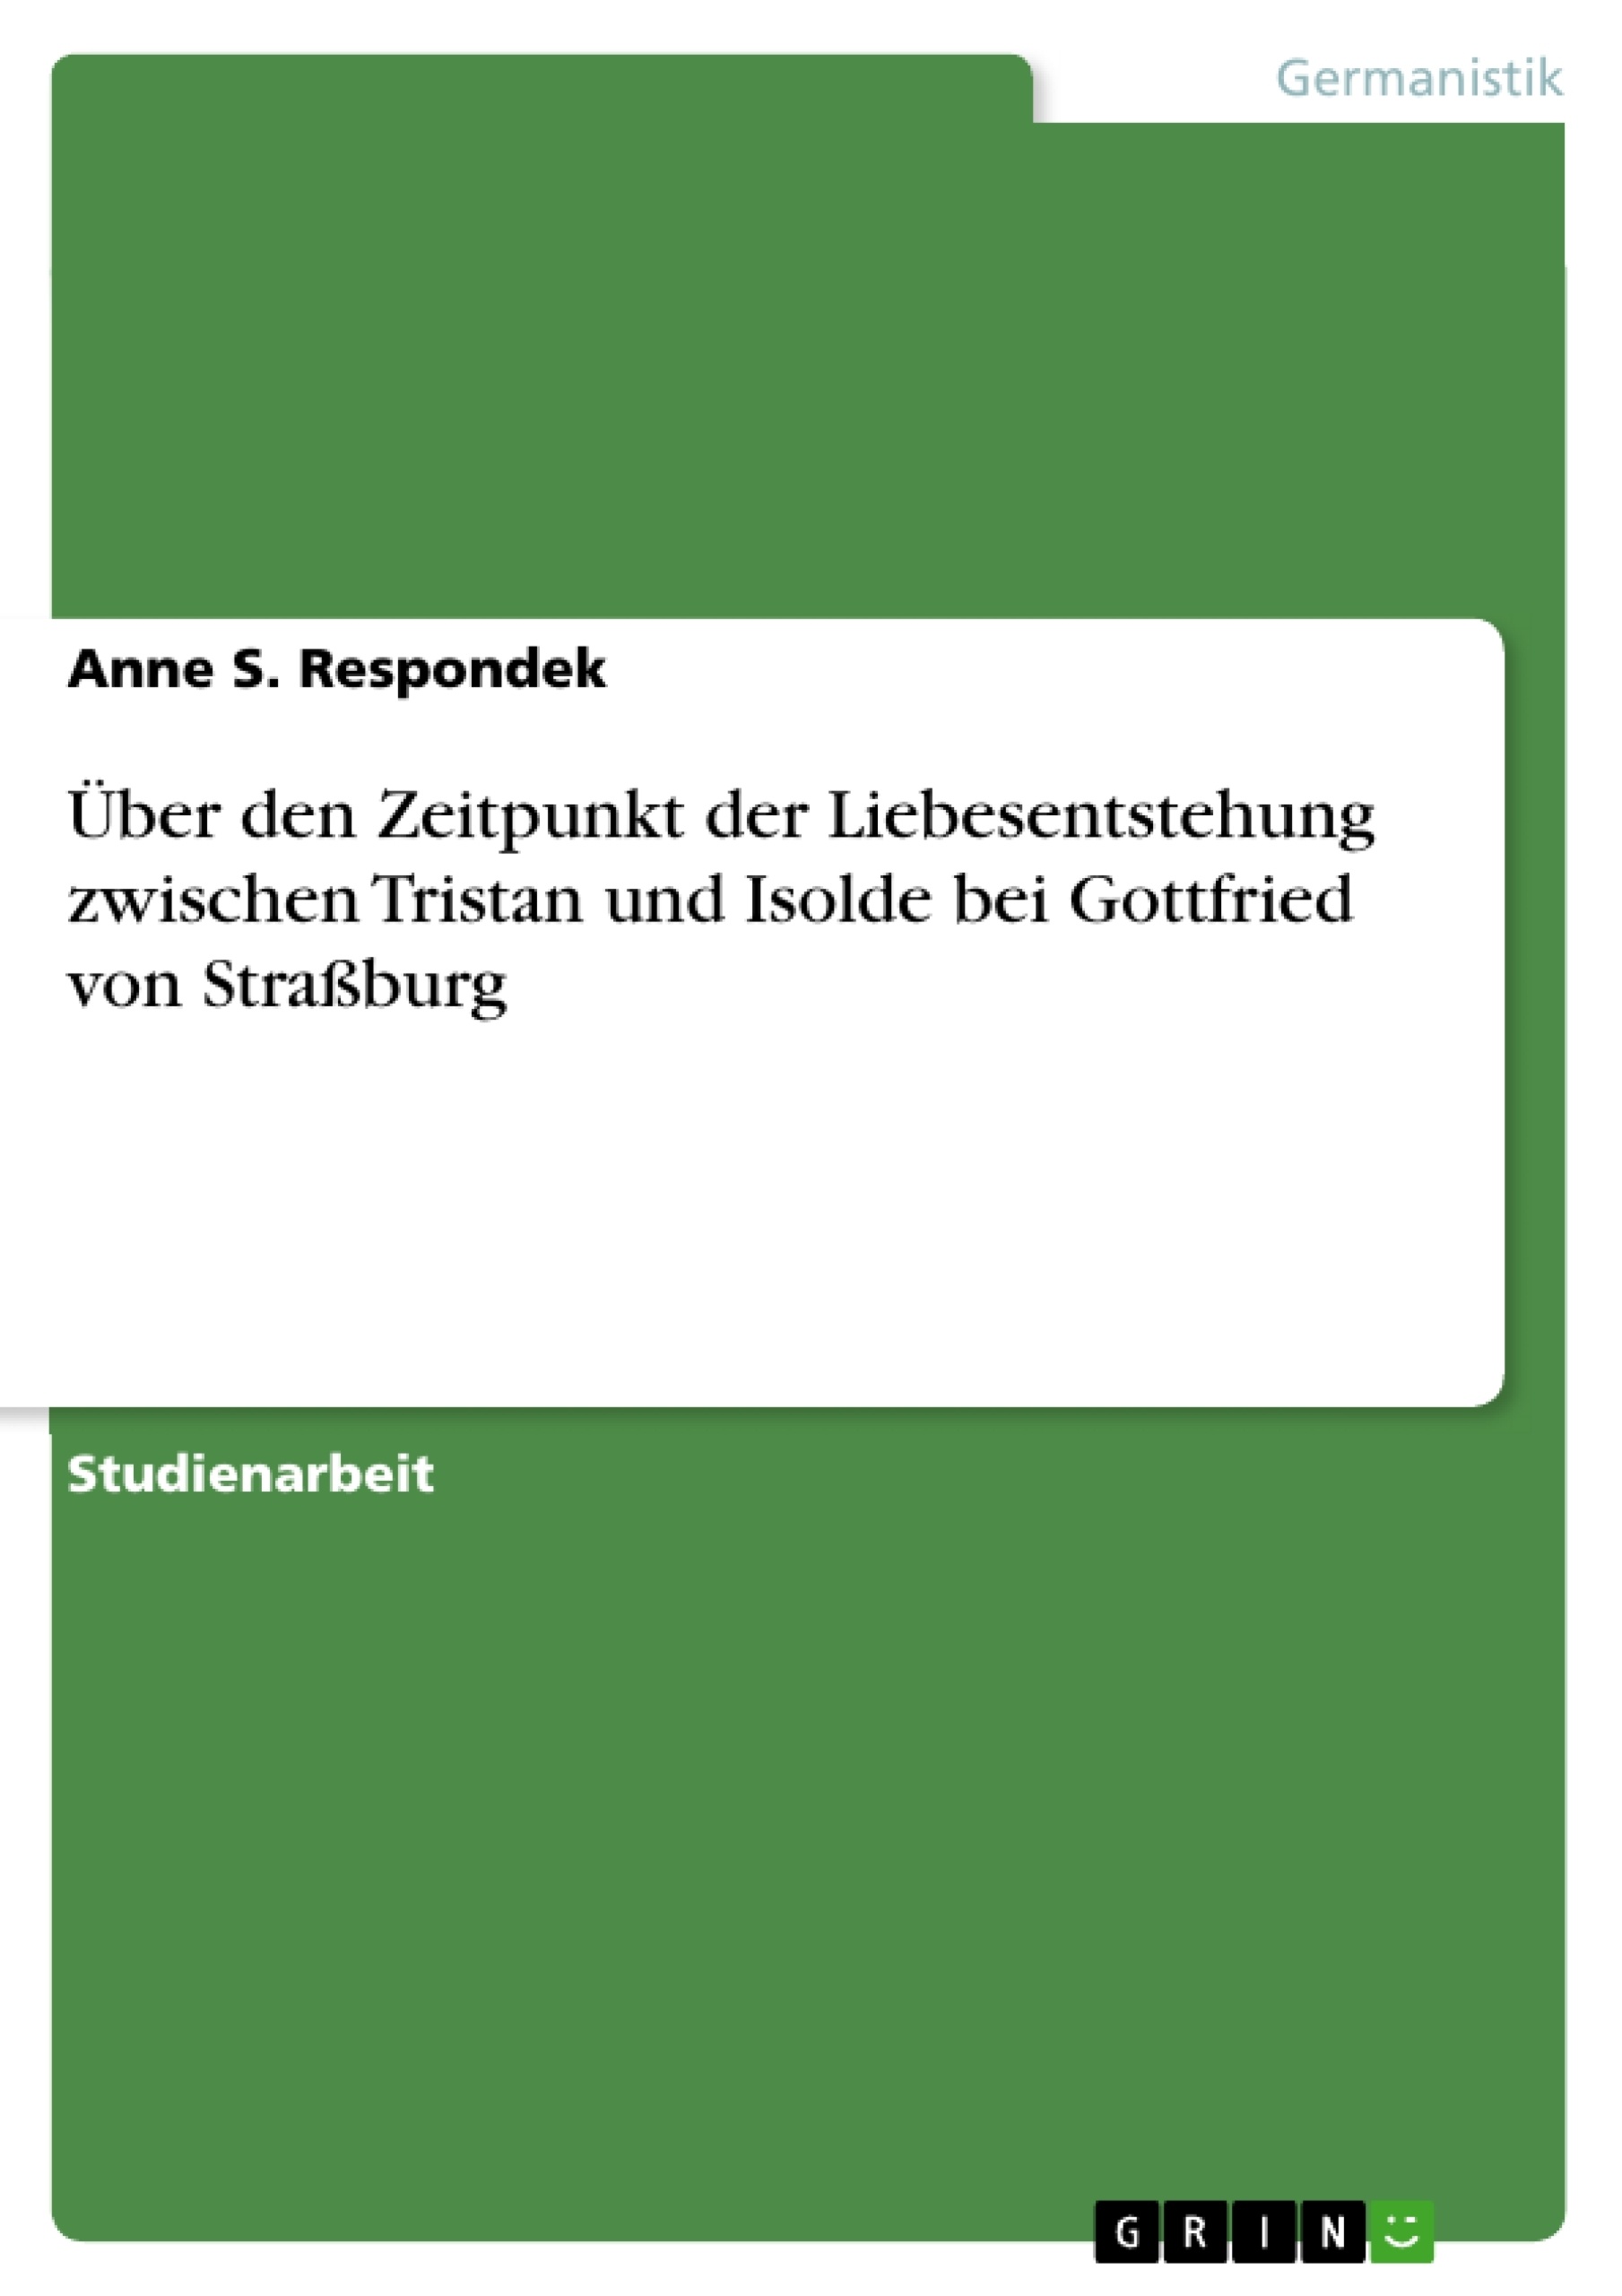 Título: Über den Zeitpunkt der Liebesentstehung zwischen Tristan und Isolde bei Gottfried von Straßburg